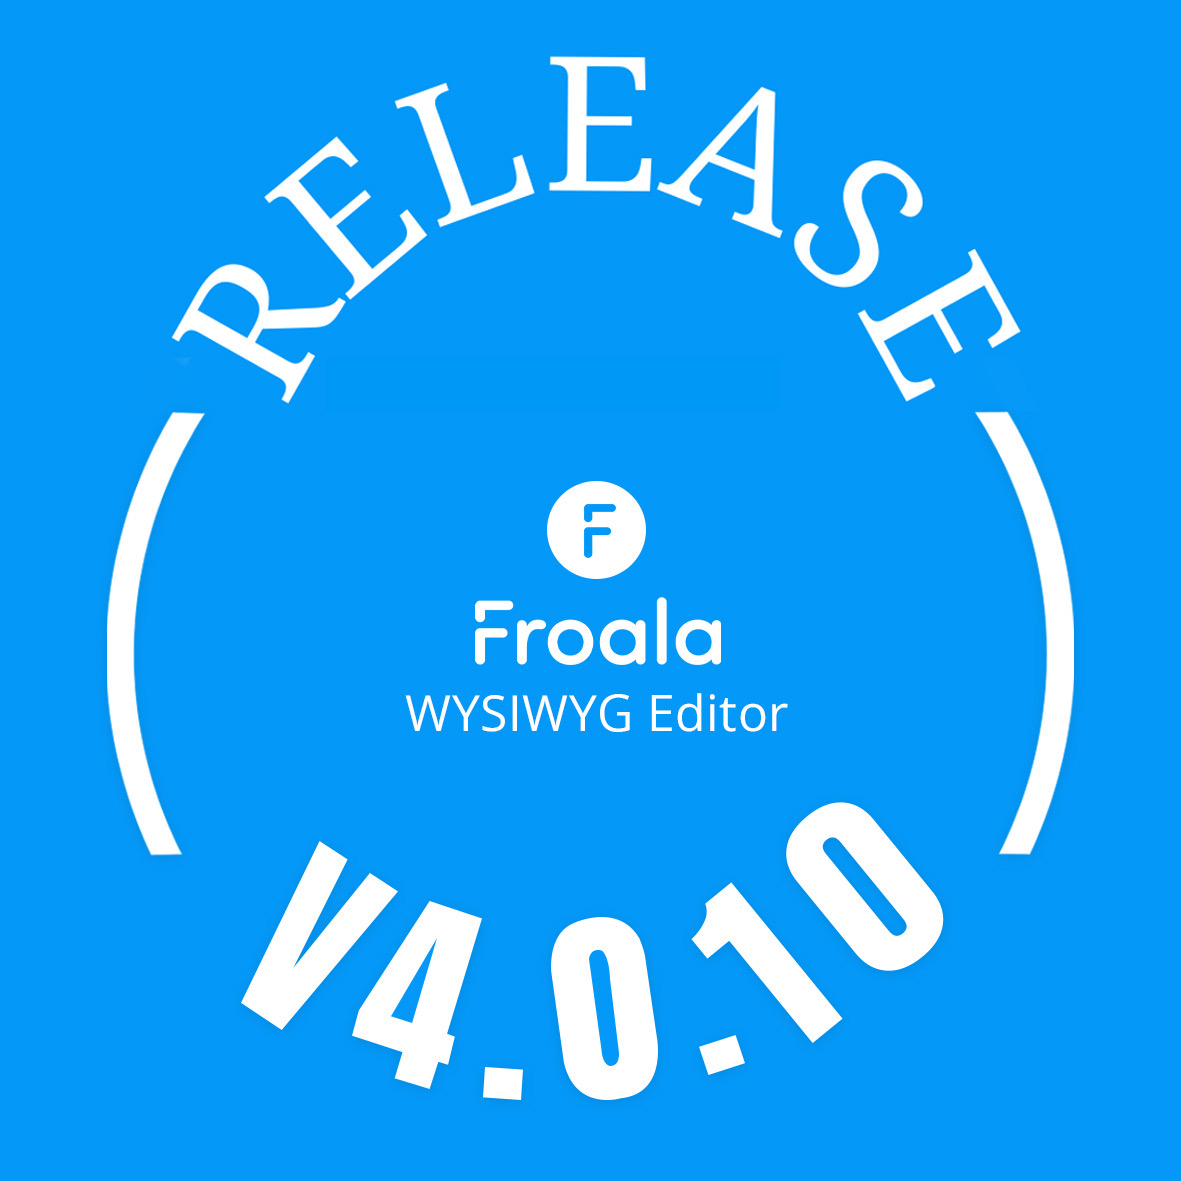 Froala-editor-v4.0.10